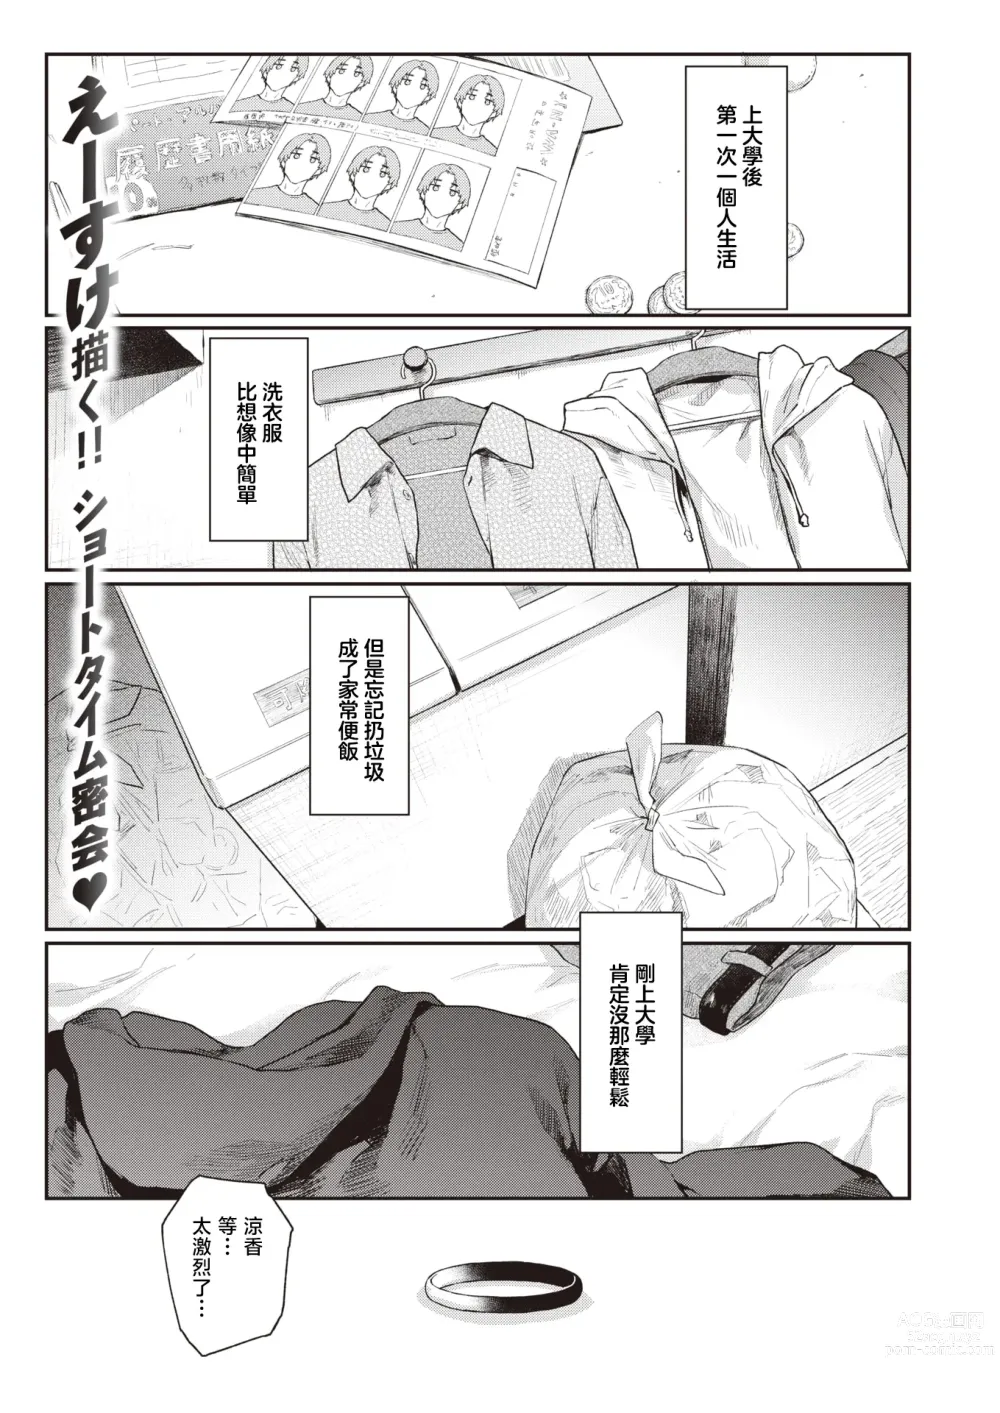 Page 2 of manga 绕道